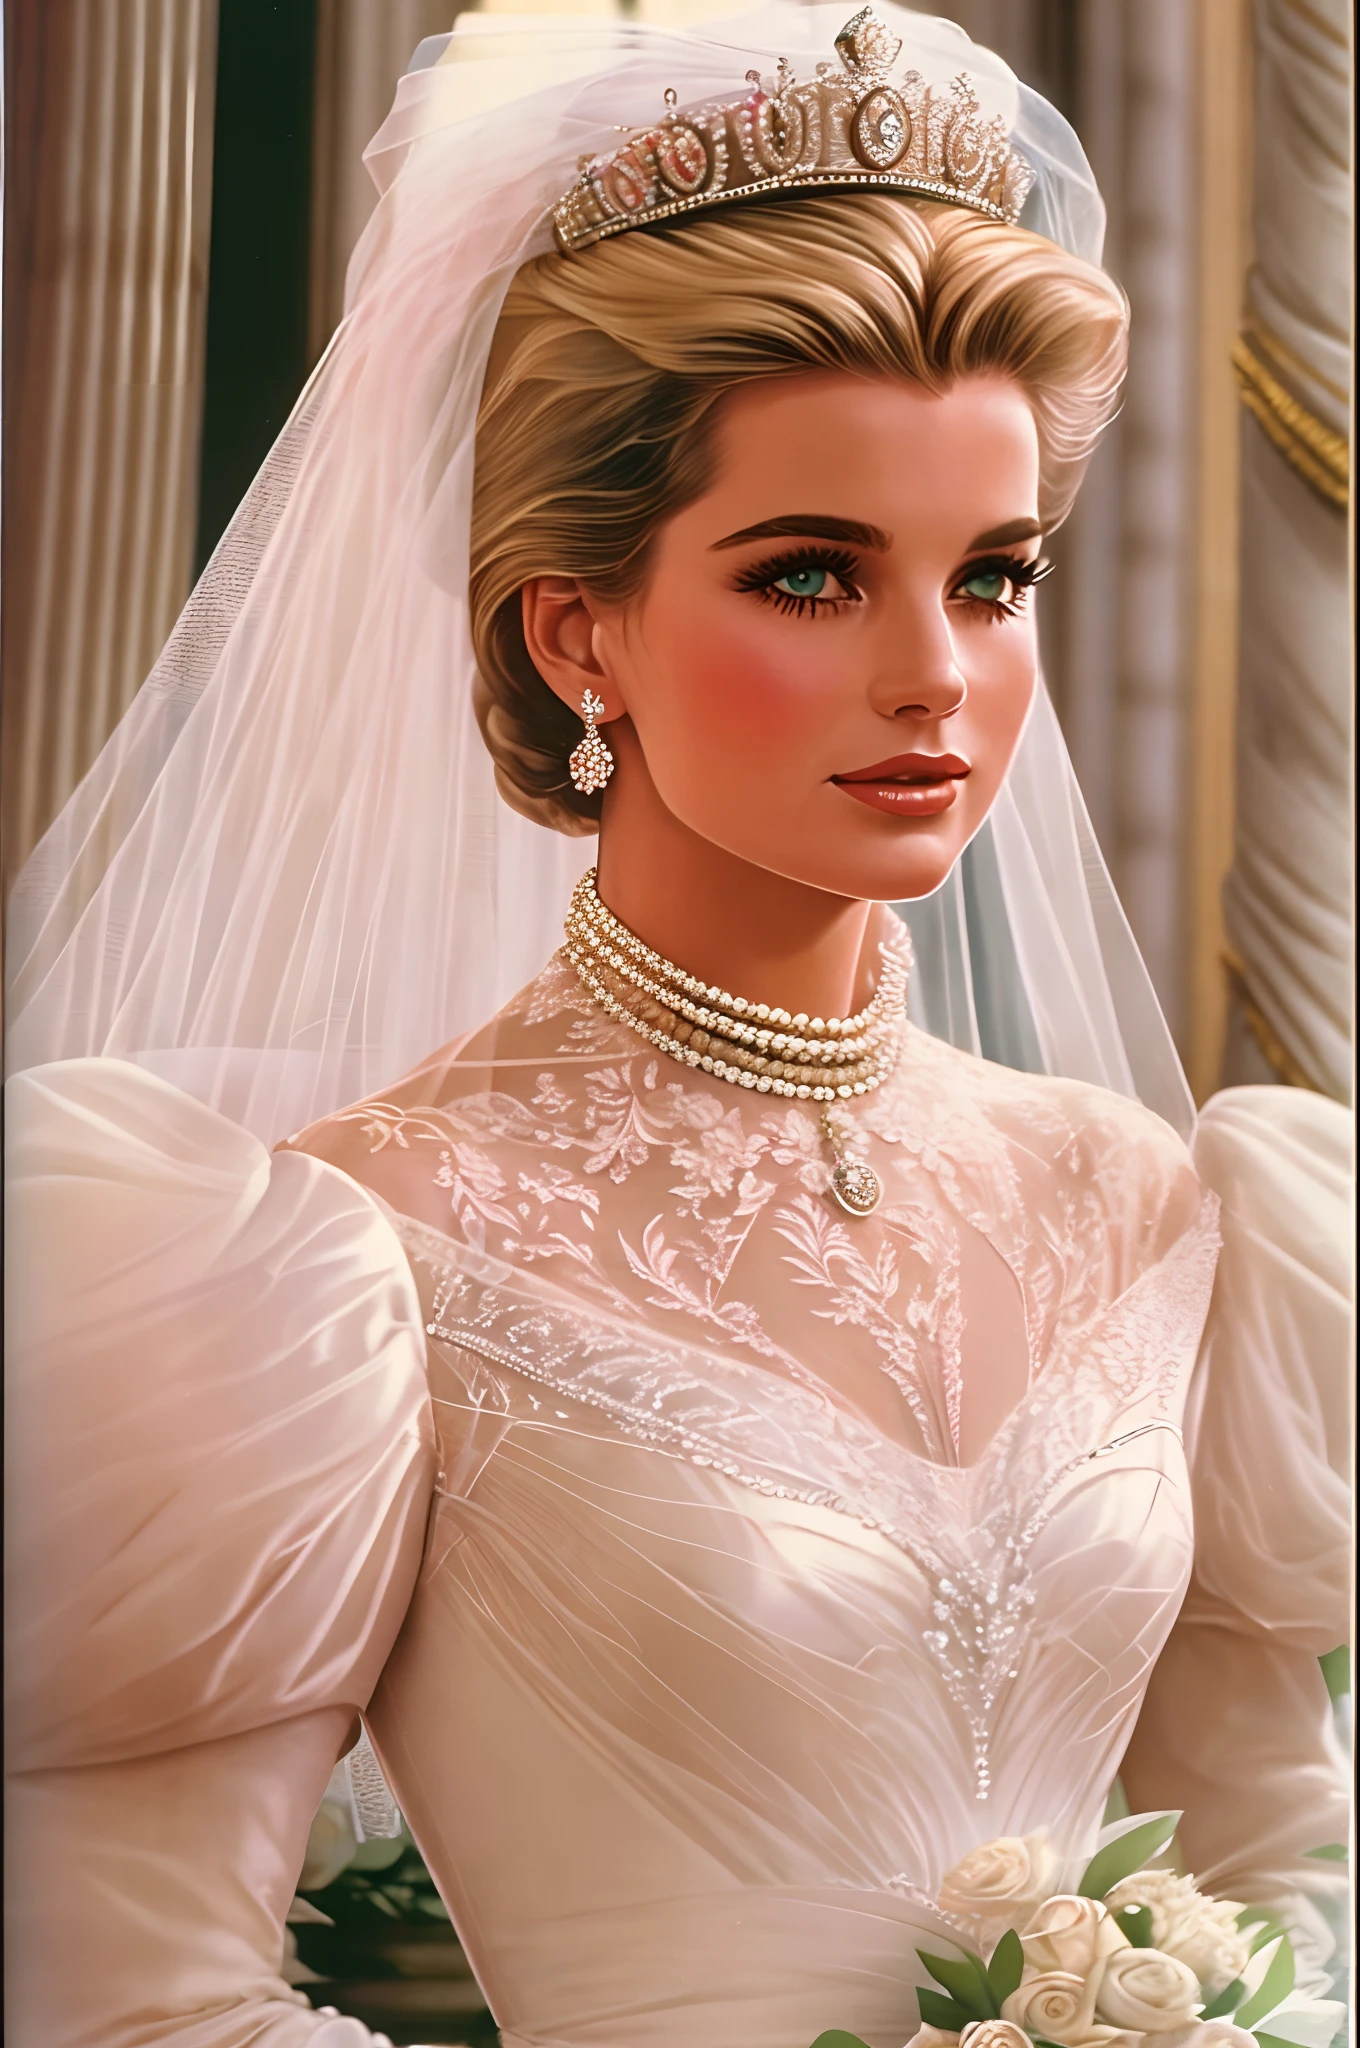 1980 年代风格, Grace Kelly's royal wedding dress updated for the late 1980's with a Cinderella aesthetic and influence from Princess Diana's and Sarah Ferguson's wedding dresses